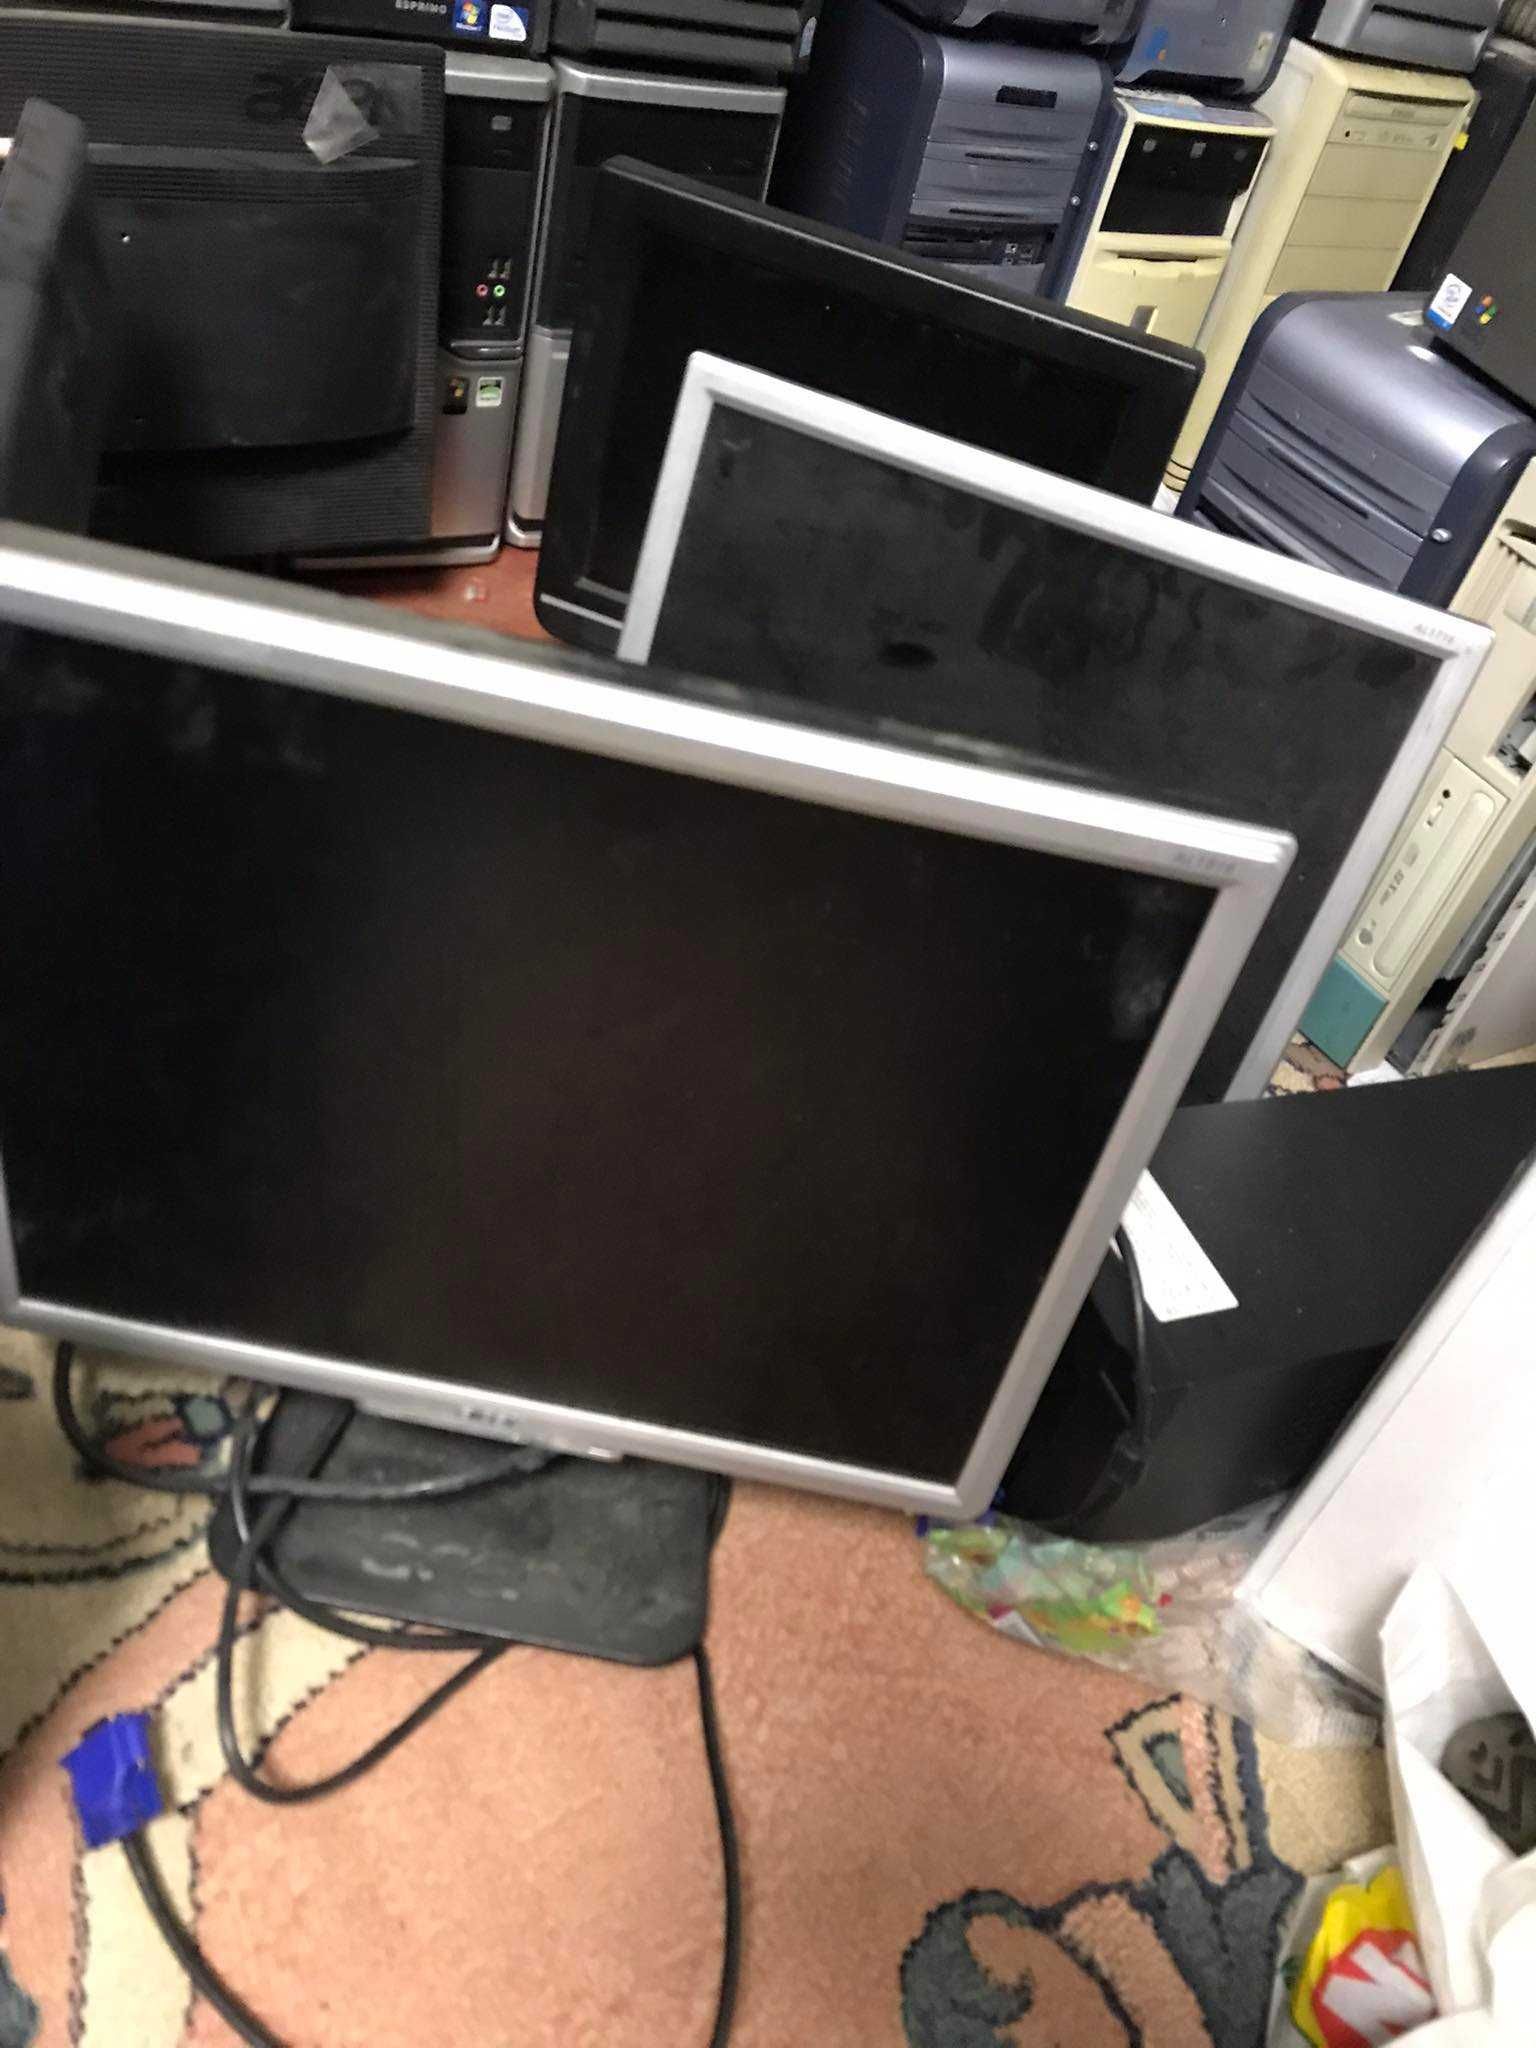 11 komputerów PC ACER DELL HP + 4 monitory wszystko sprawne